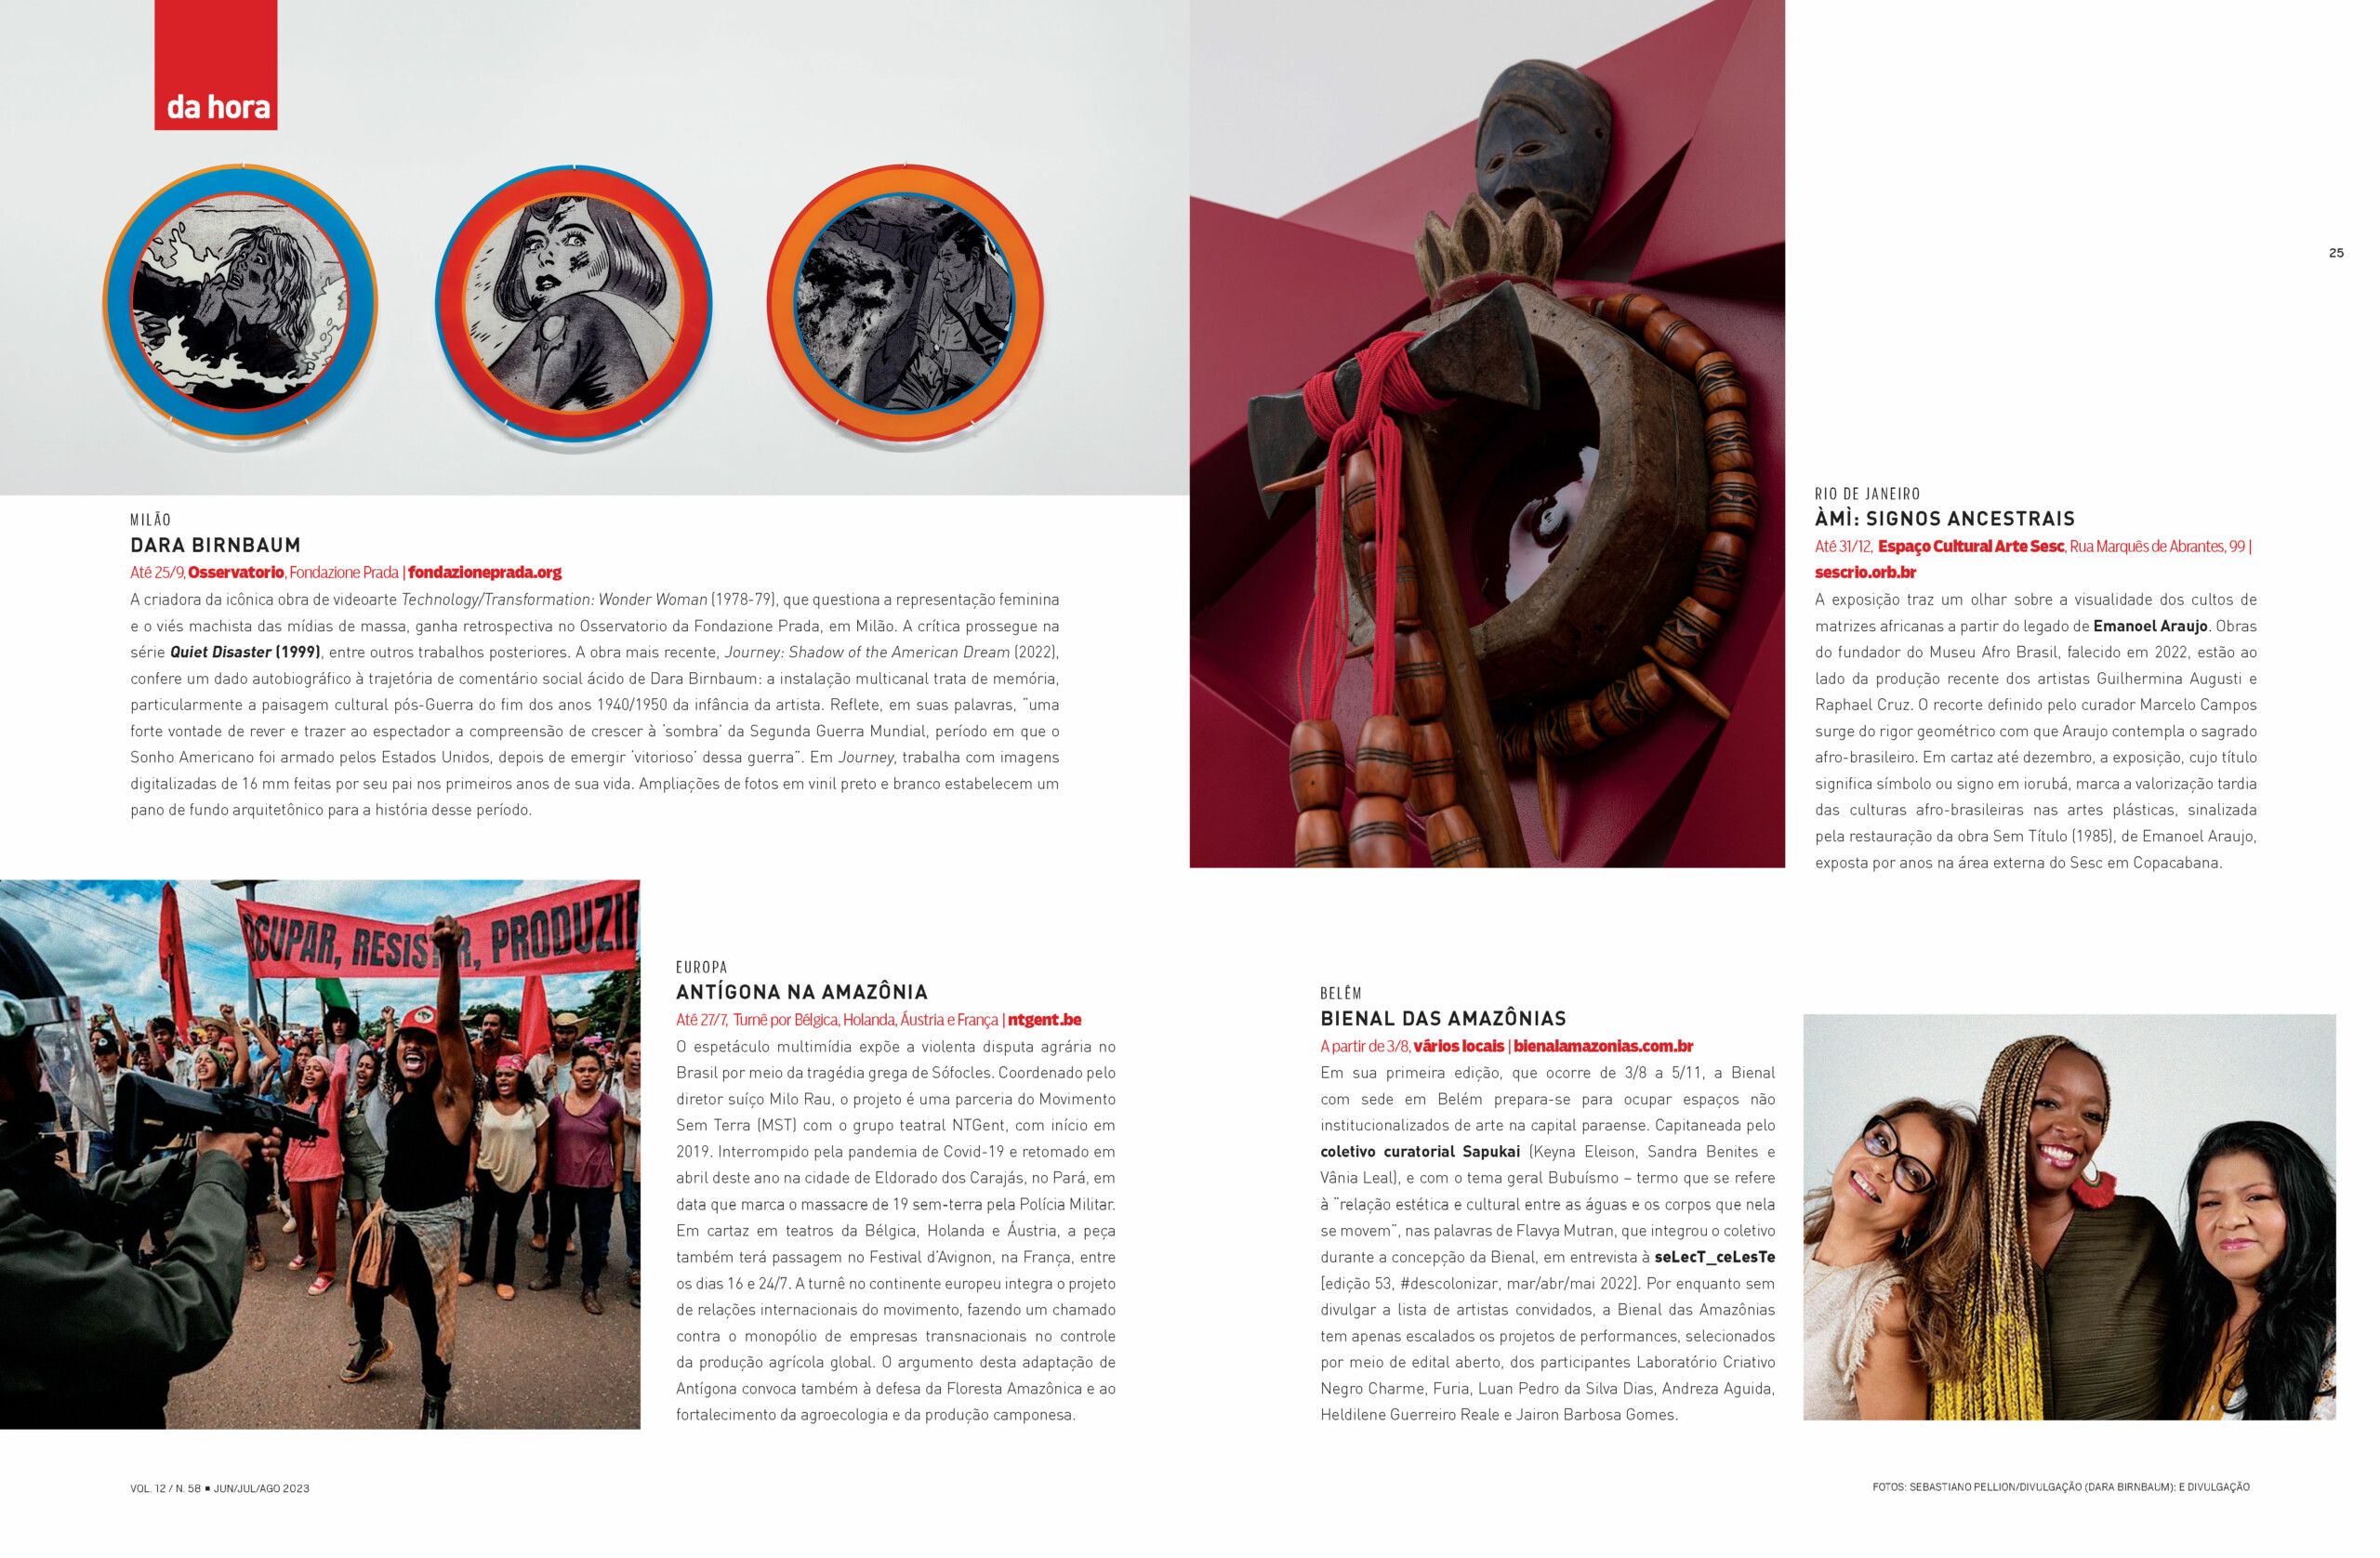 Do samba ao sambaqui: floresta, uma invenção cultural - Revista  seLecT_ceLesTe